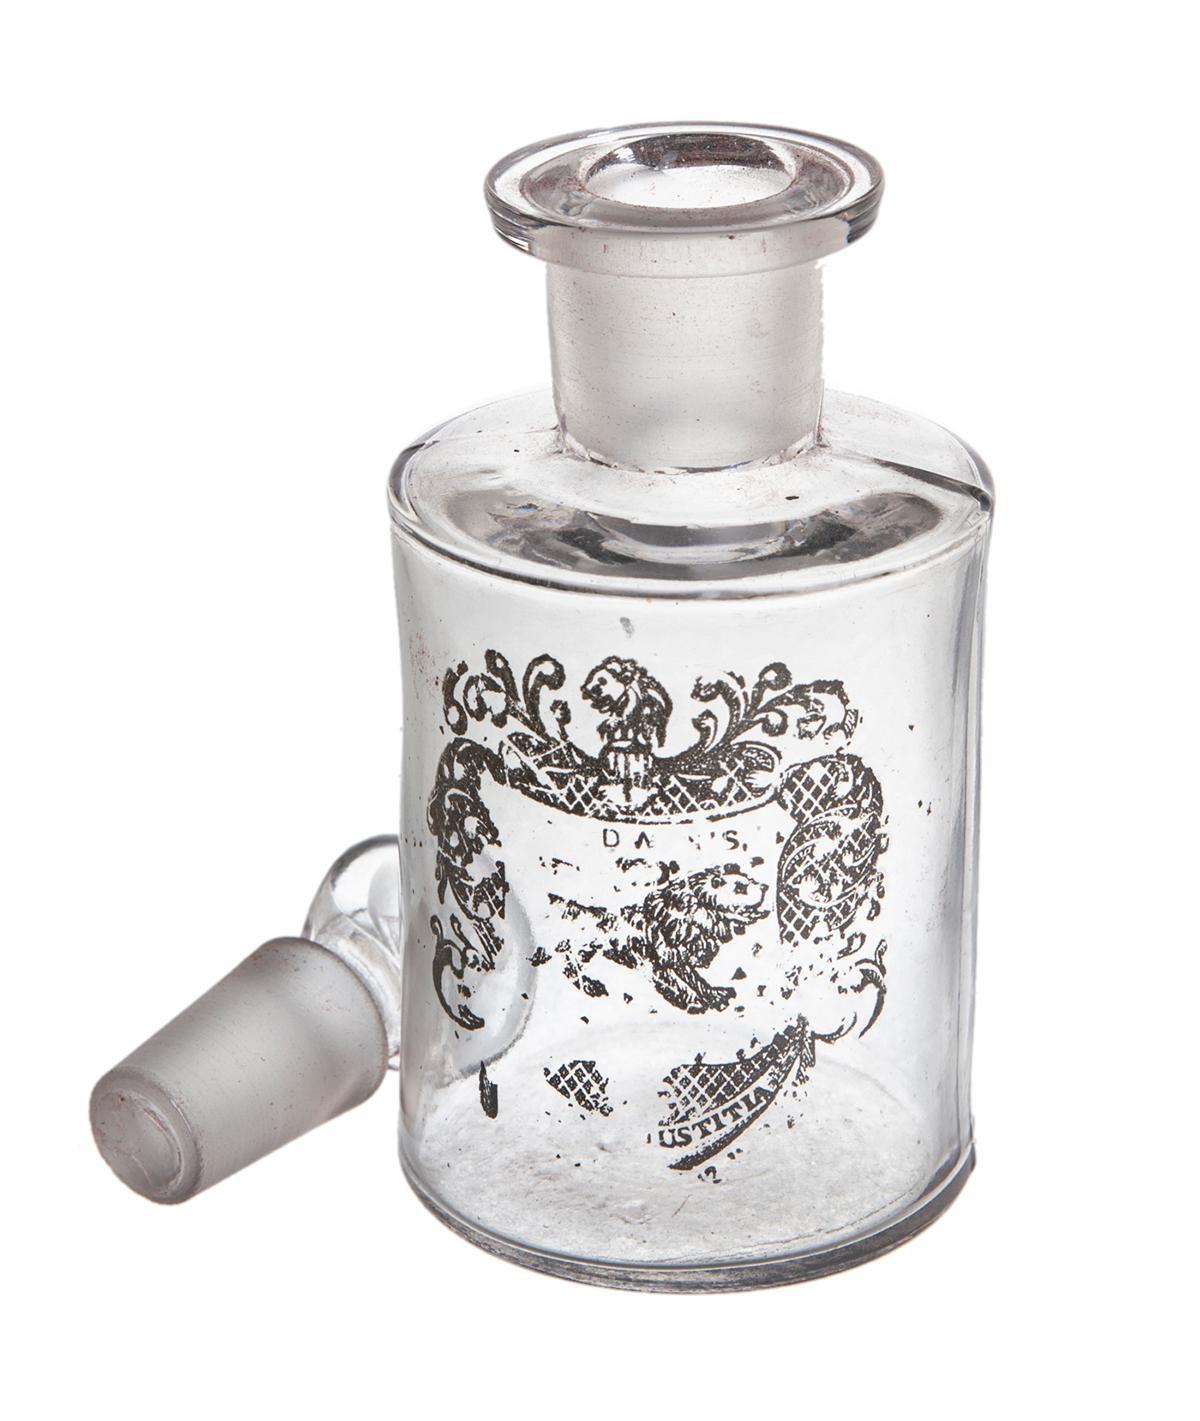 velvet and veneer perfume bottle